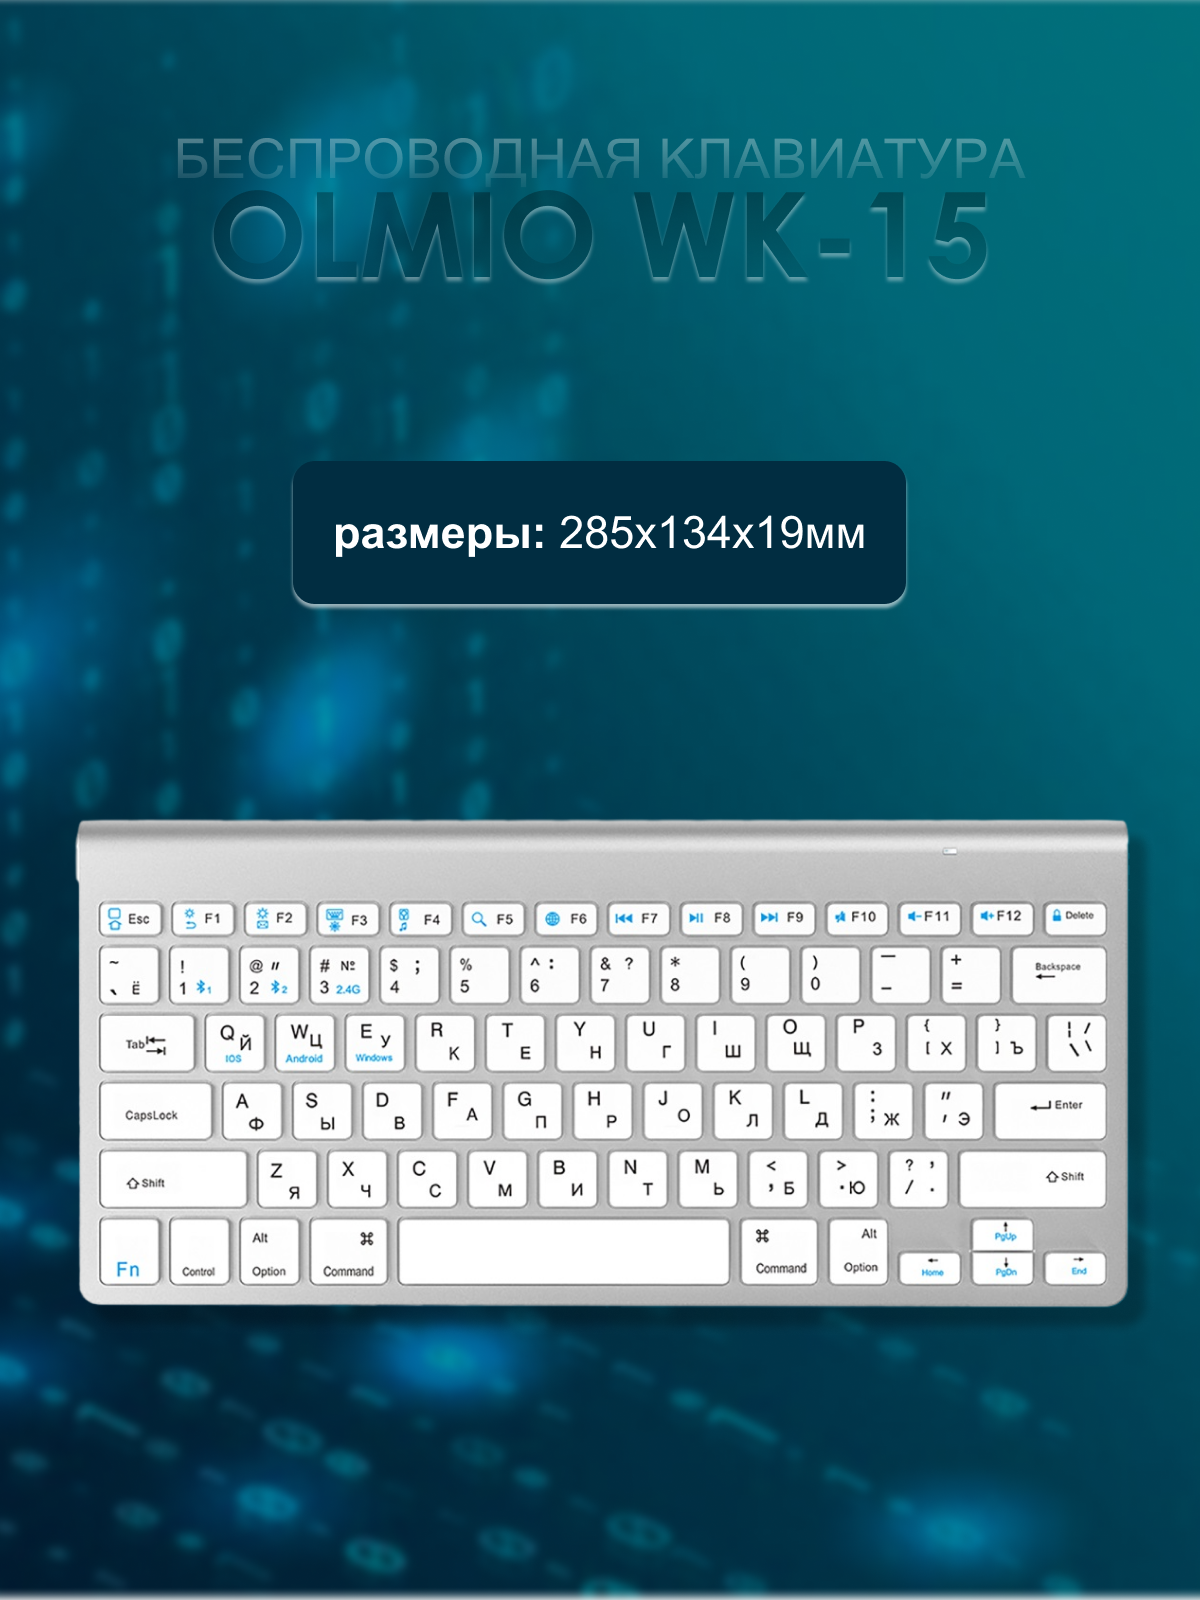 Механическая клавиатура Olmio WK-15 с поддержкой Bluetooth черная